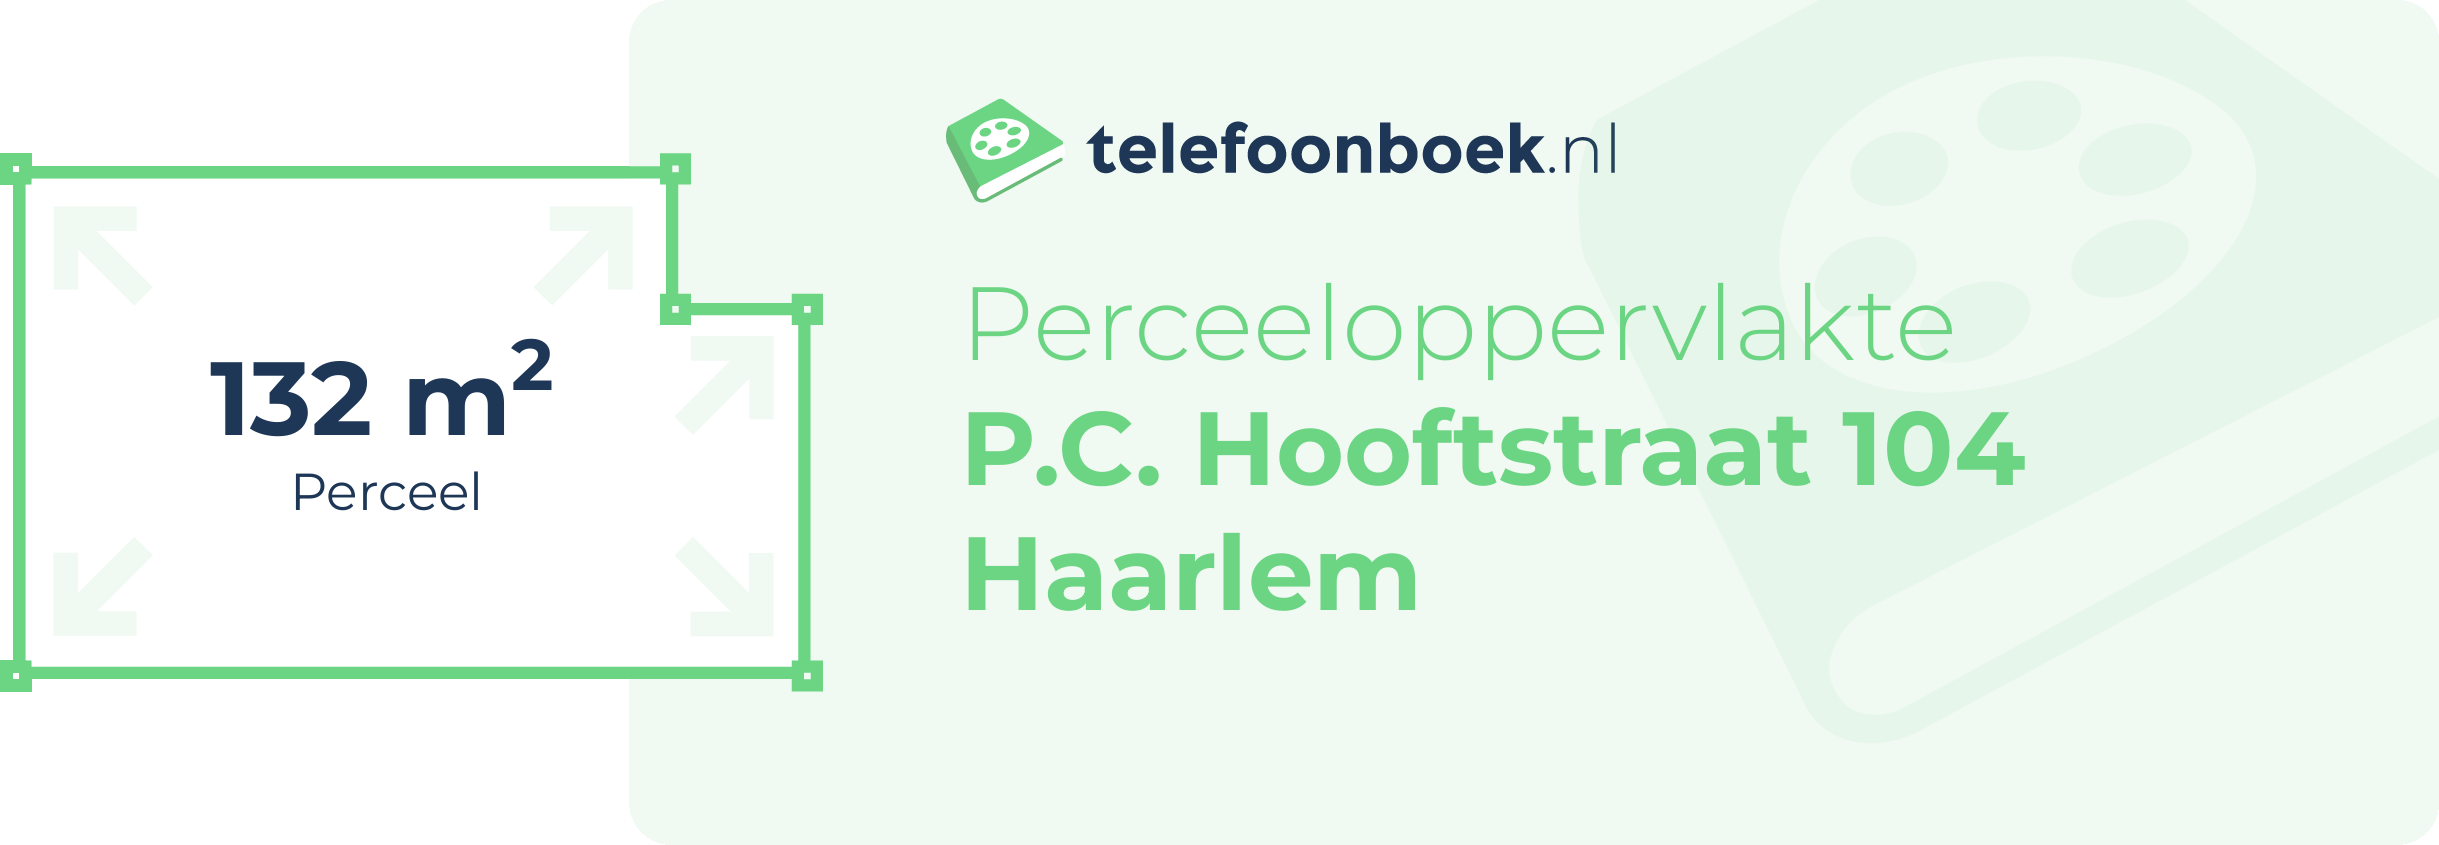 Perceeloppervlakte P.C. Hooftstraat 104 Haarlem